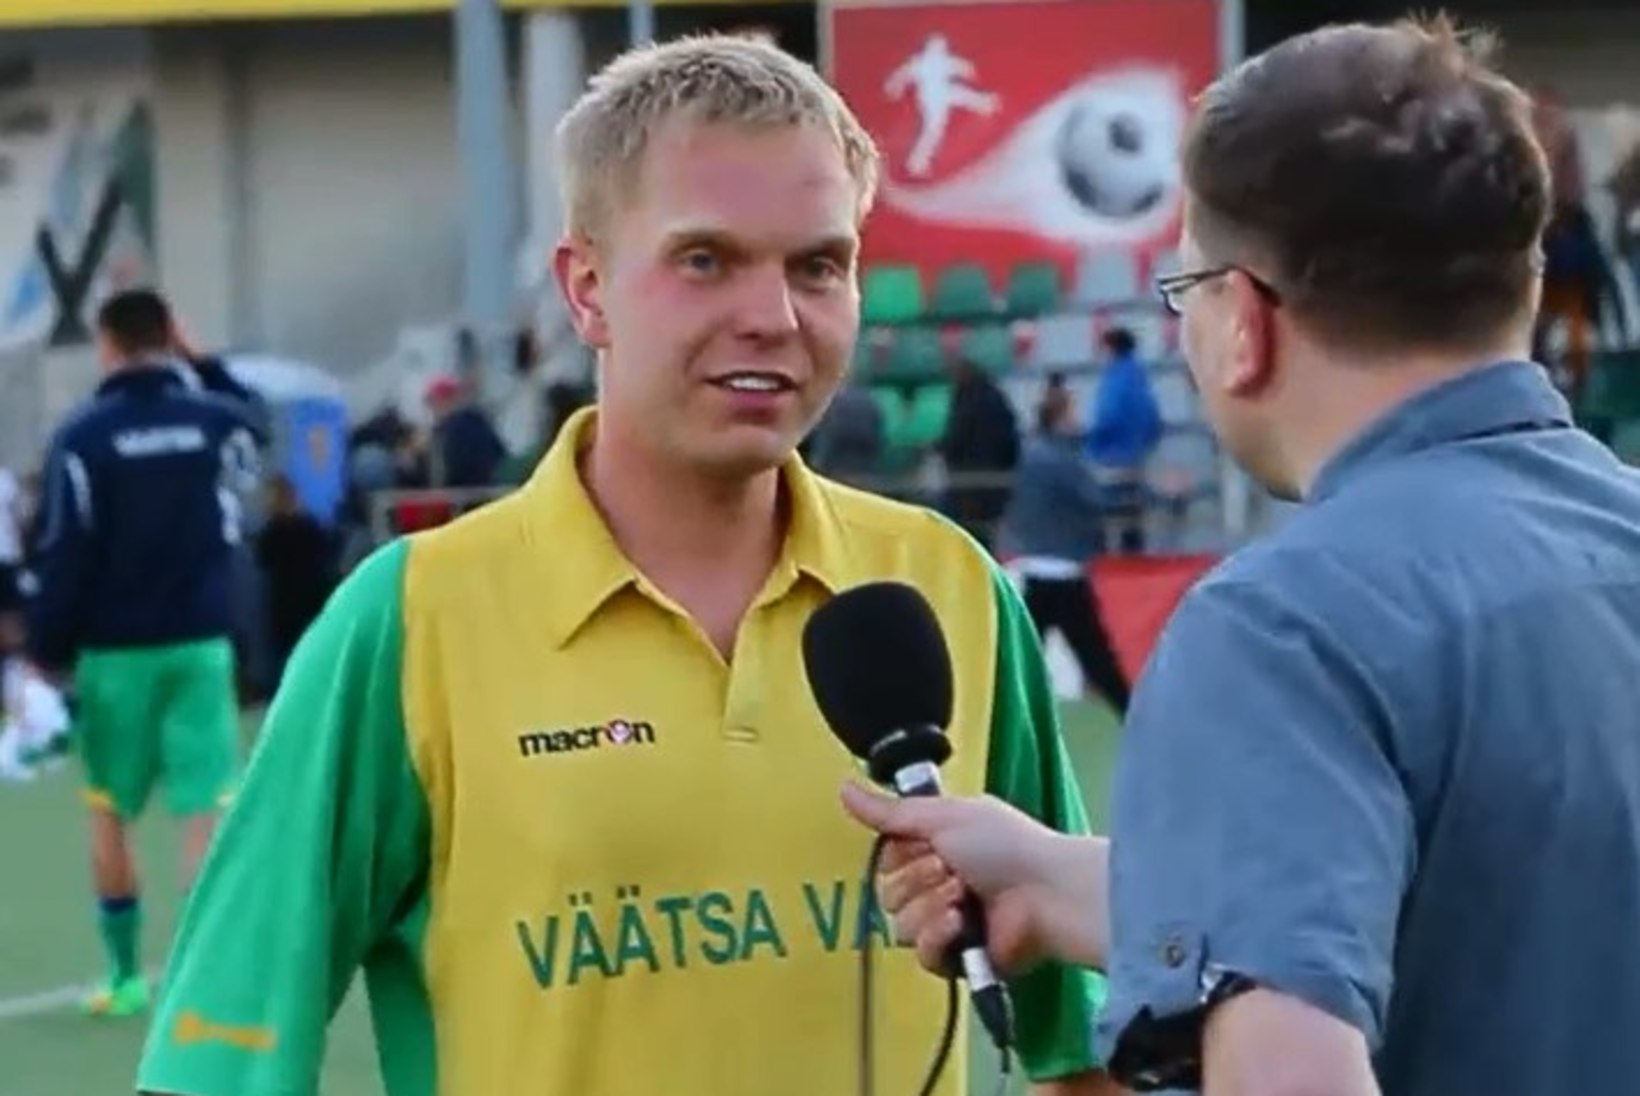 ÕHTULEHE VIDEO | FC Reaal - JK Väätsa Vald, mängujärgsed intervjuud ja matši tipphetked